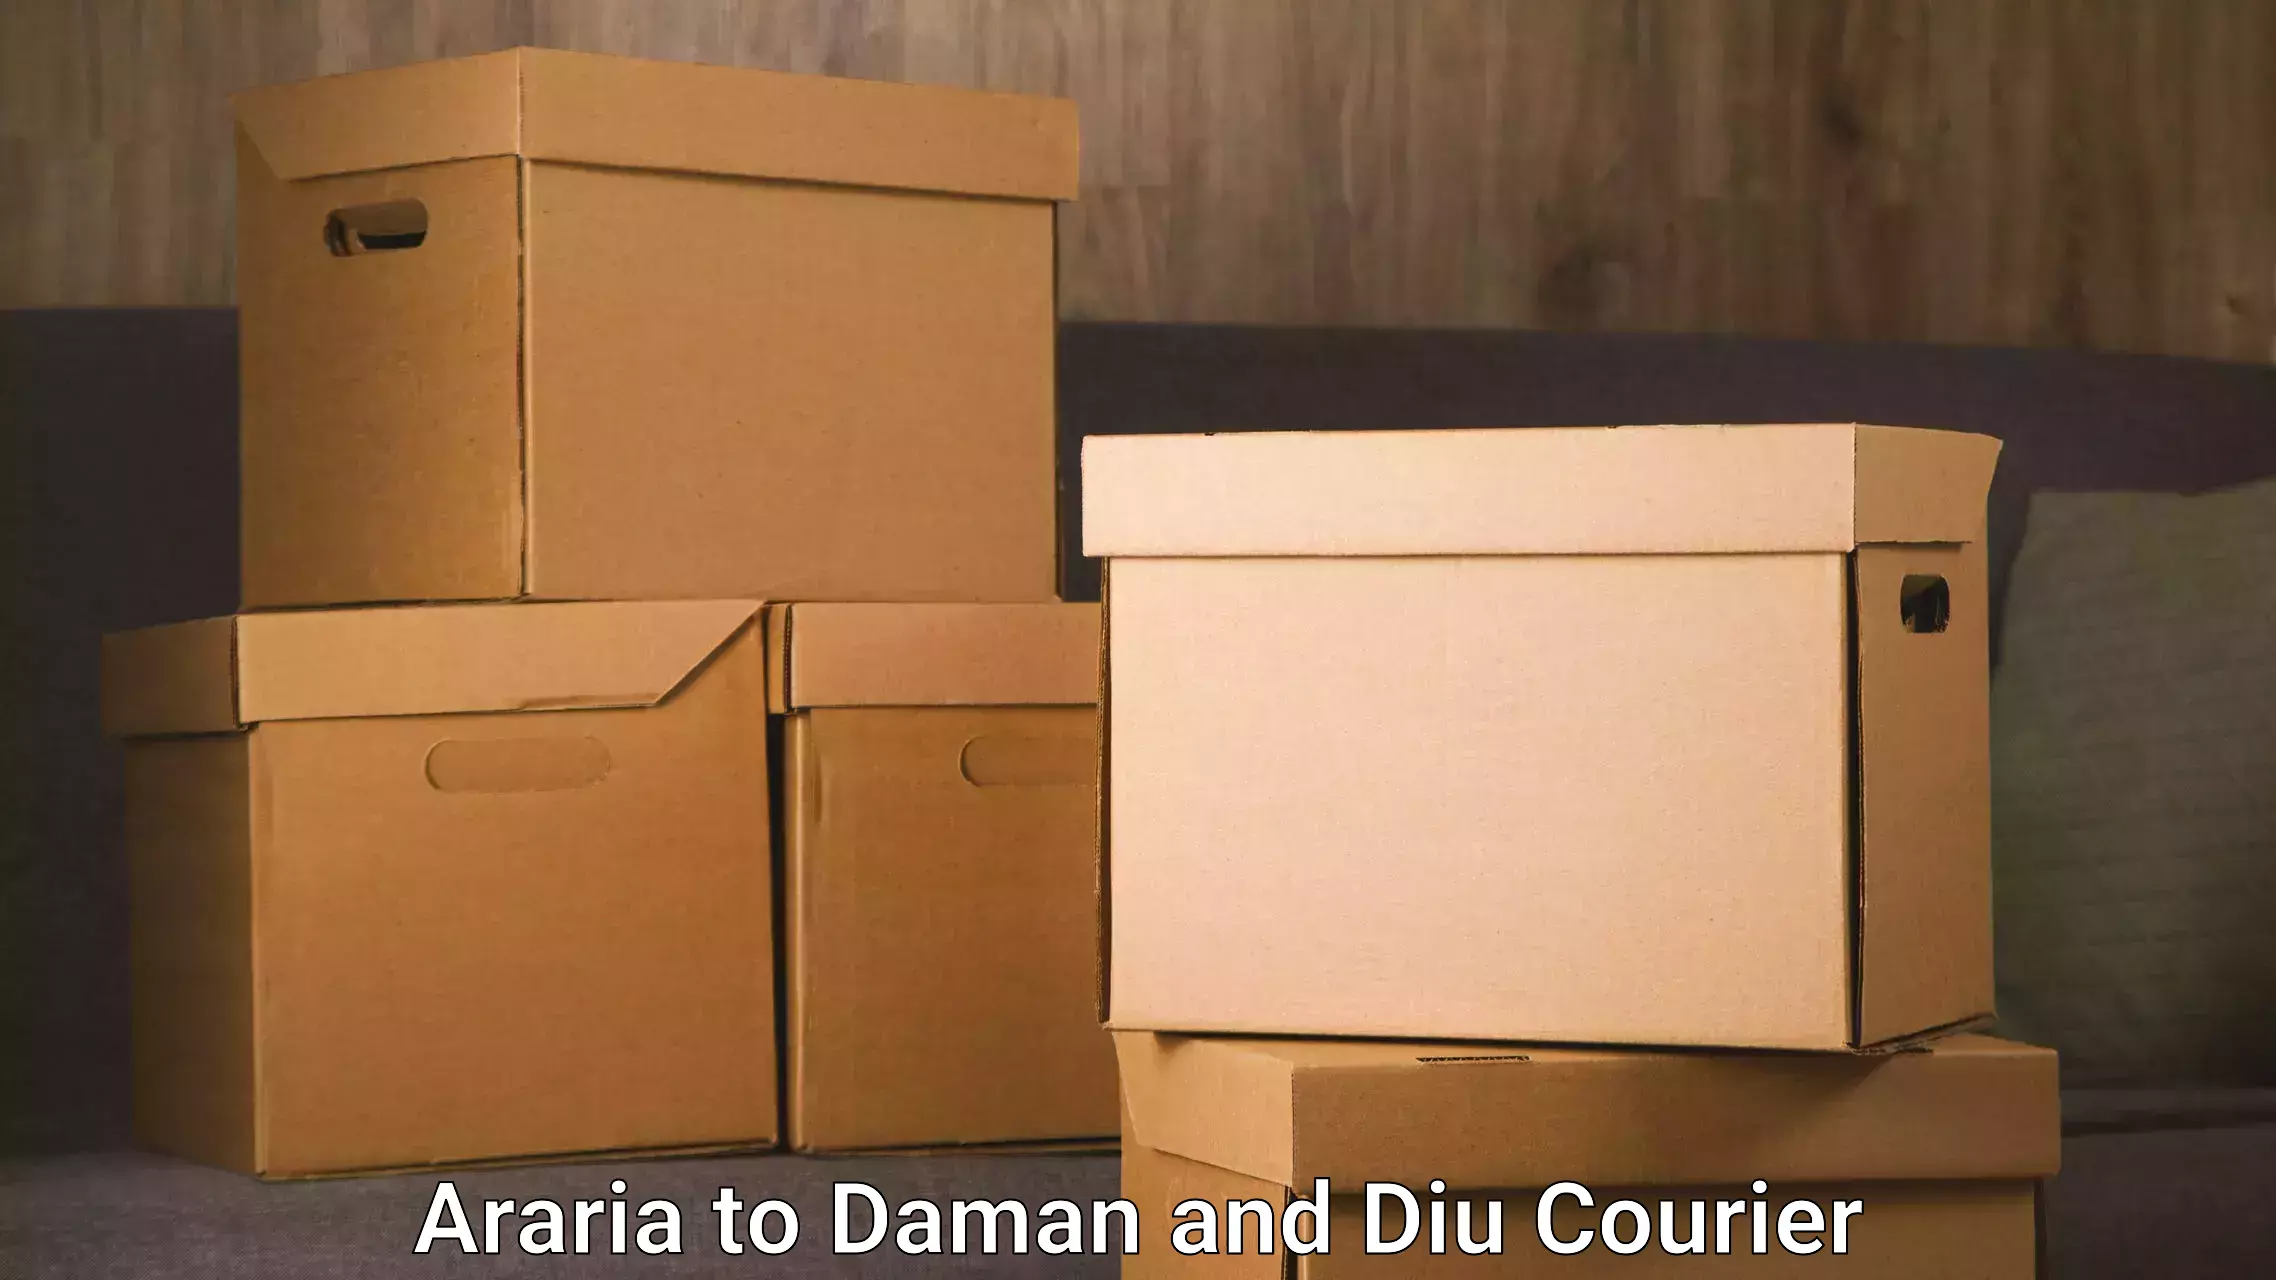 Stress-free moving Araria to Diu